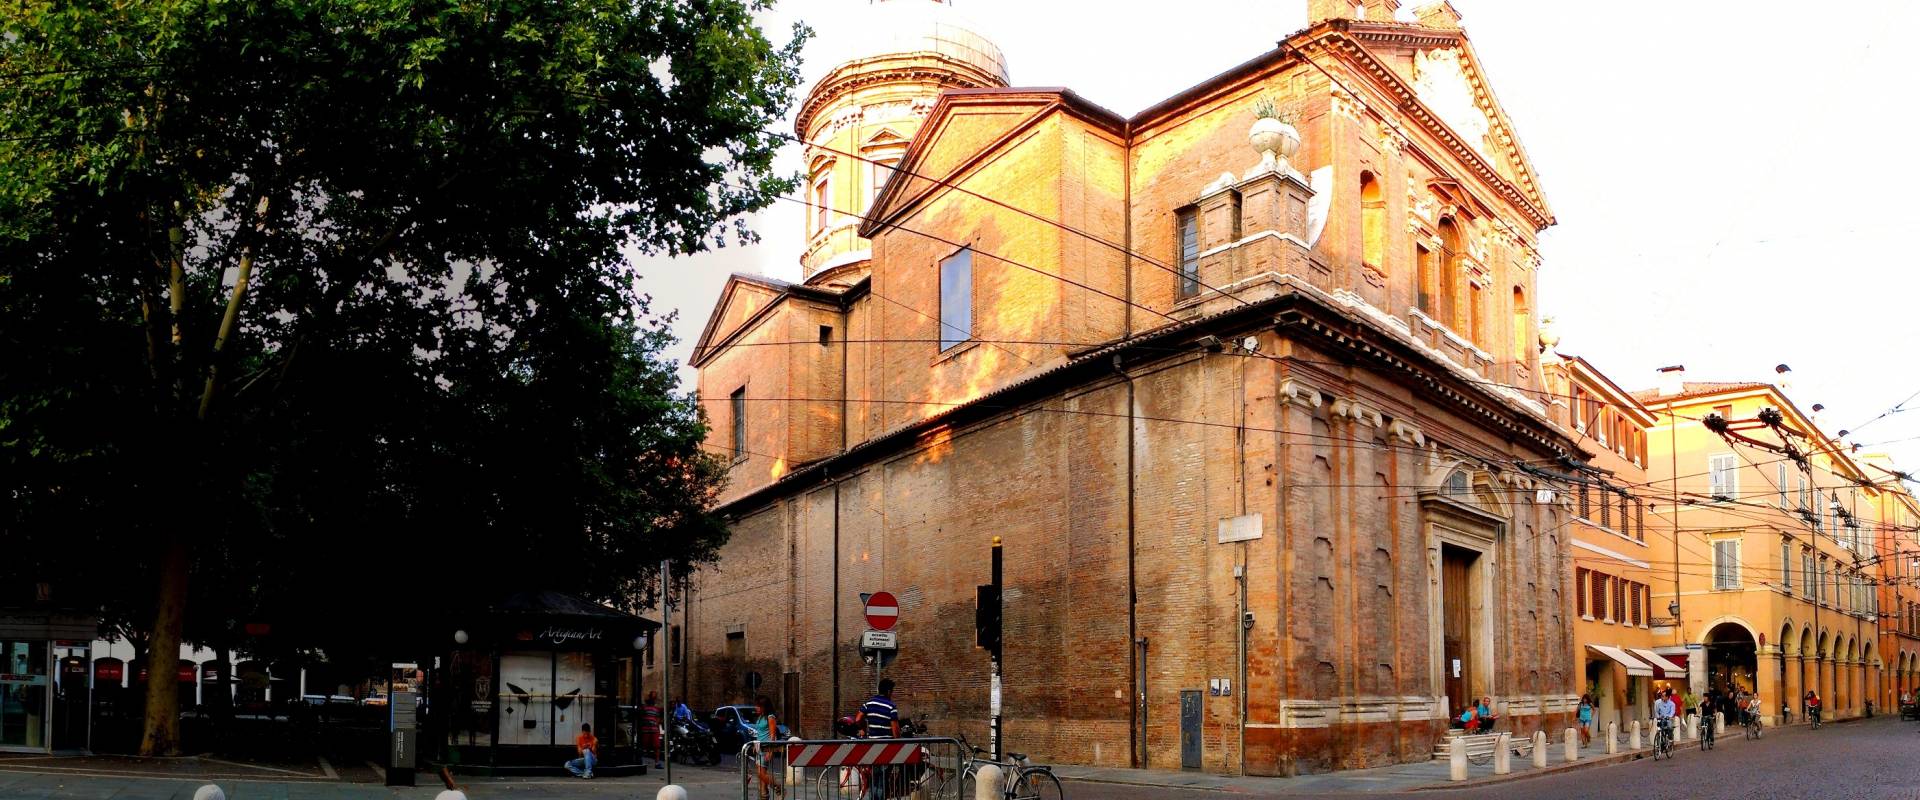 Chiesa del Voto, Modena photo by AngMCMXCI